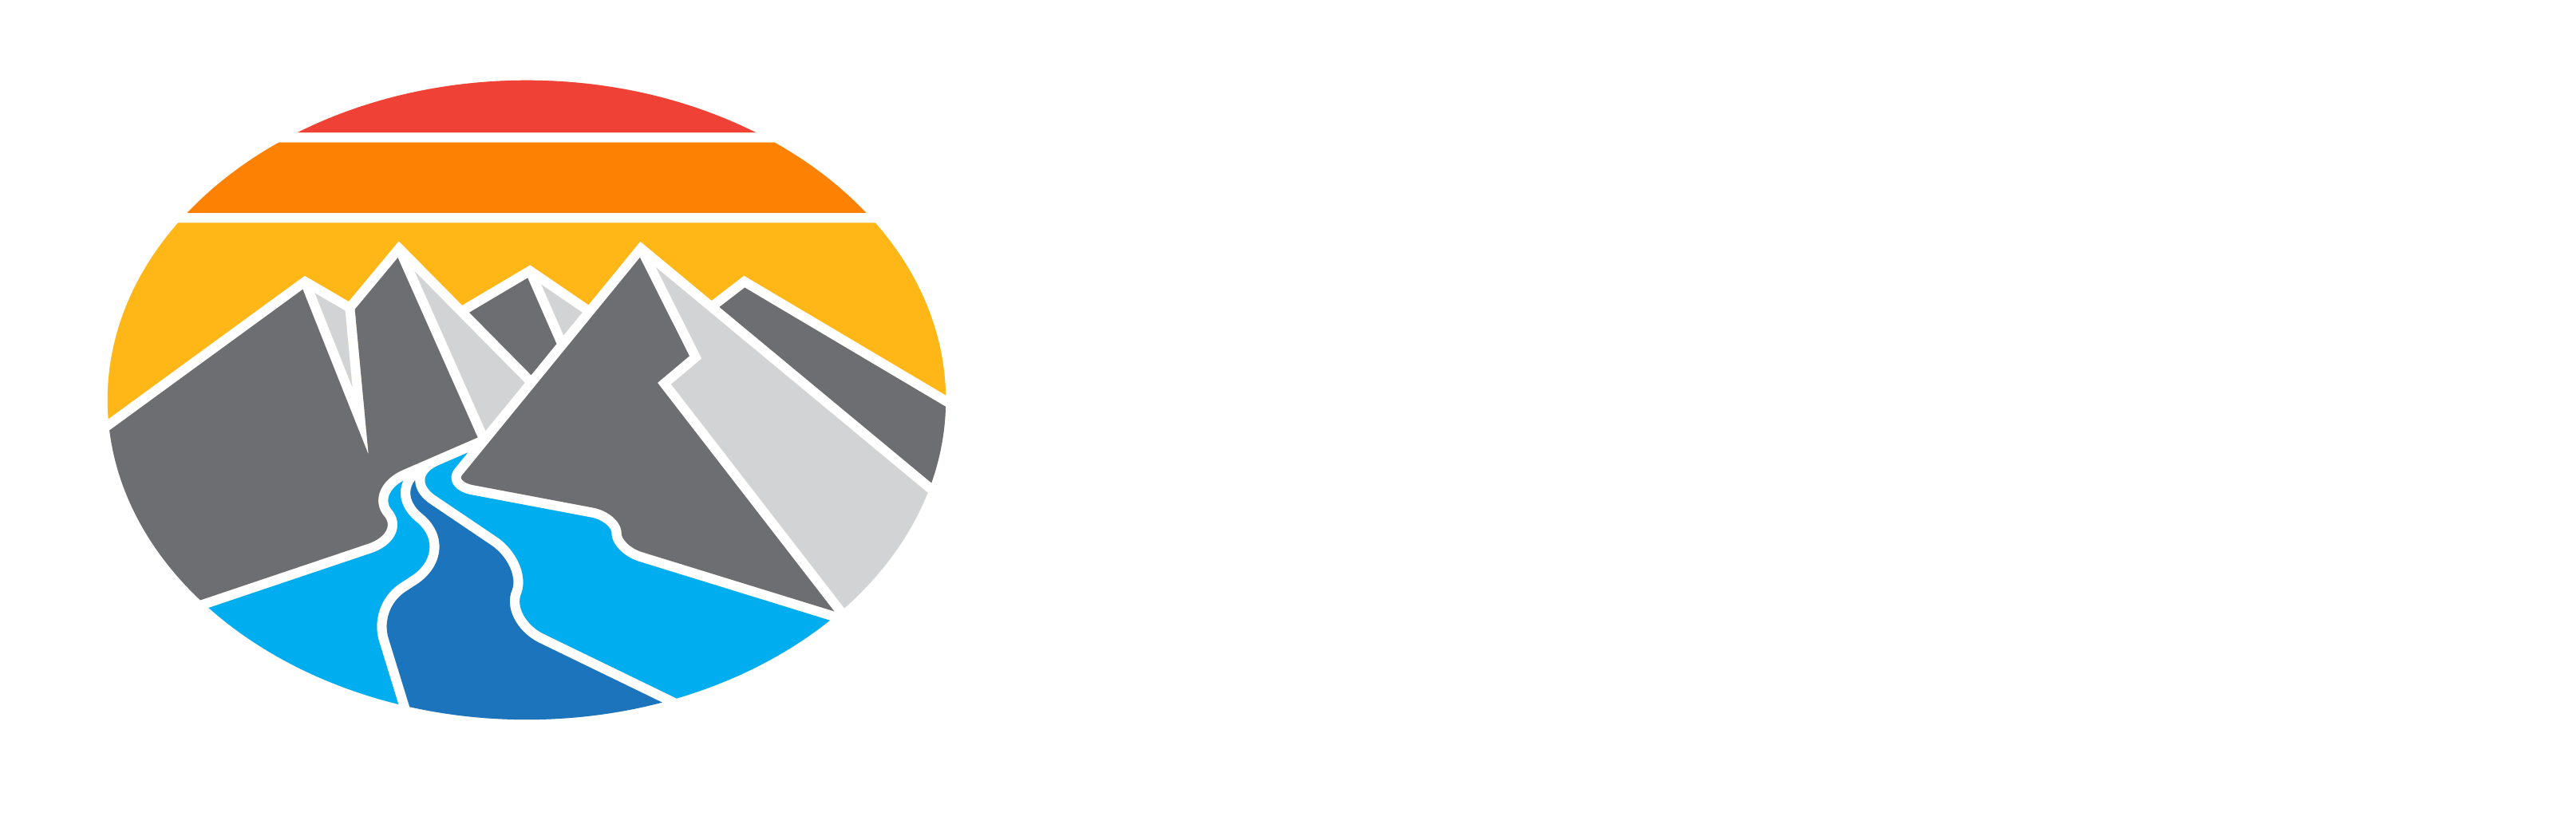 Cascade River Gear